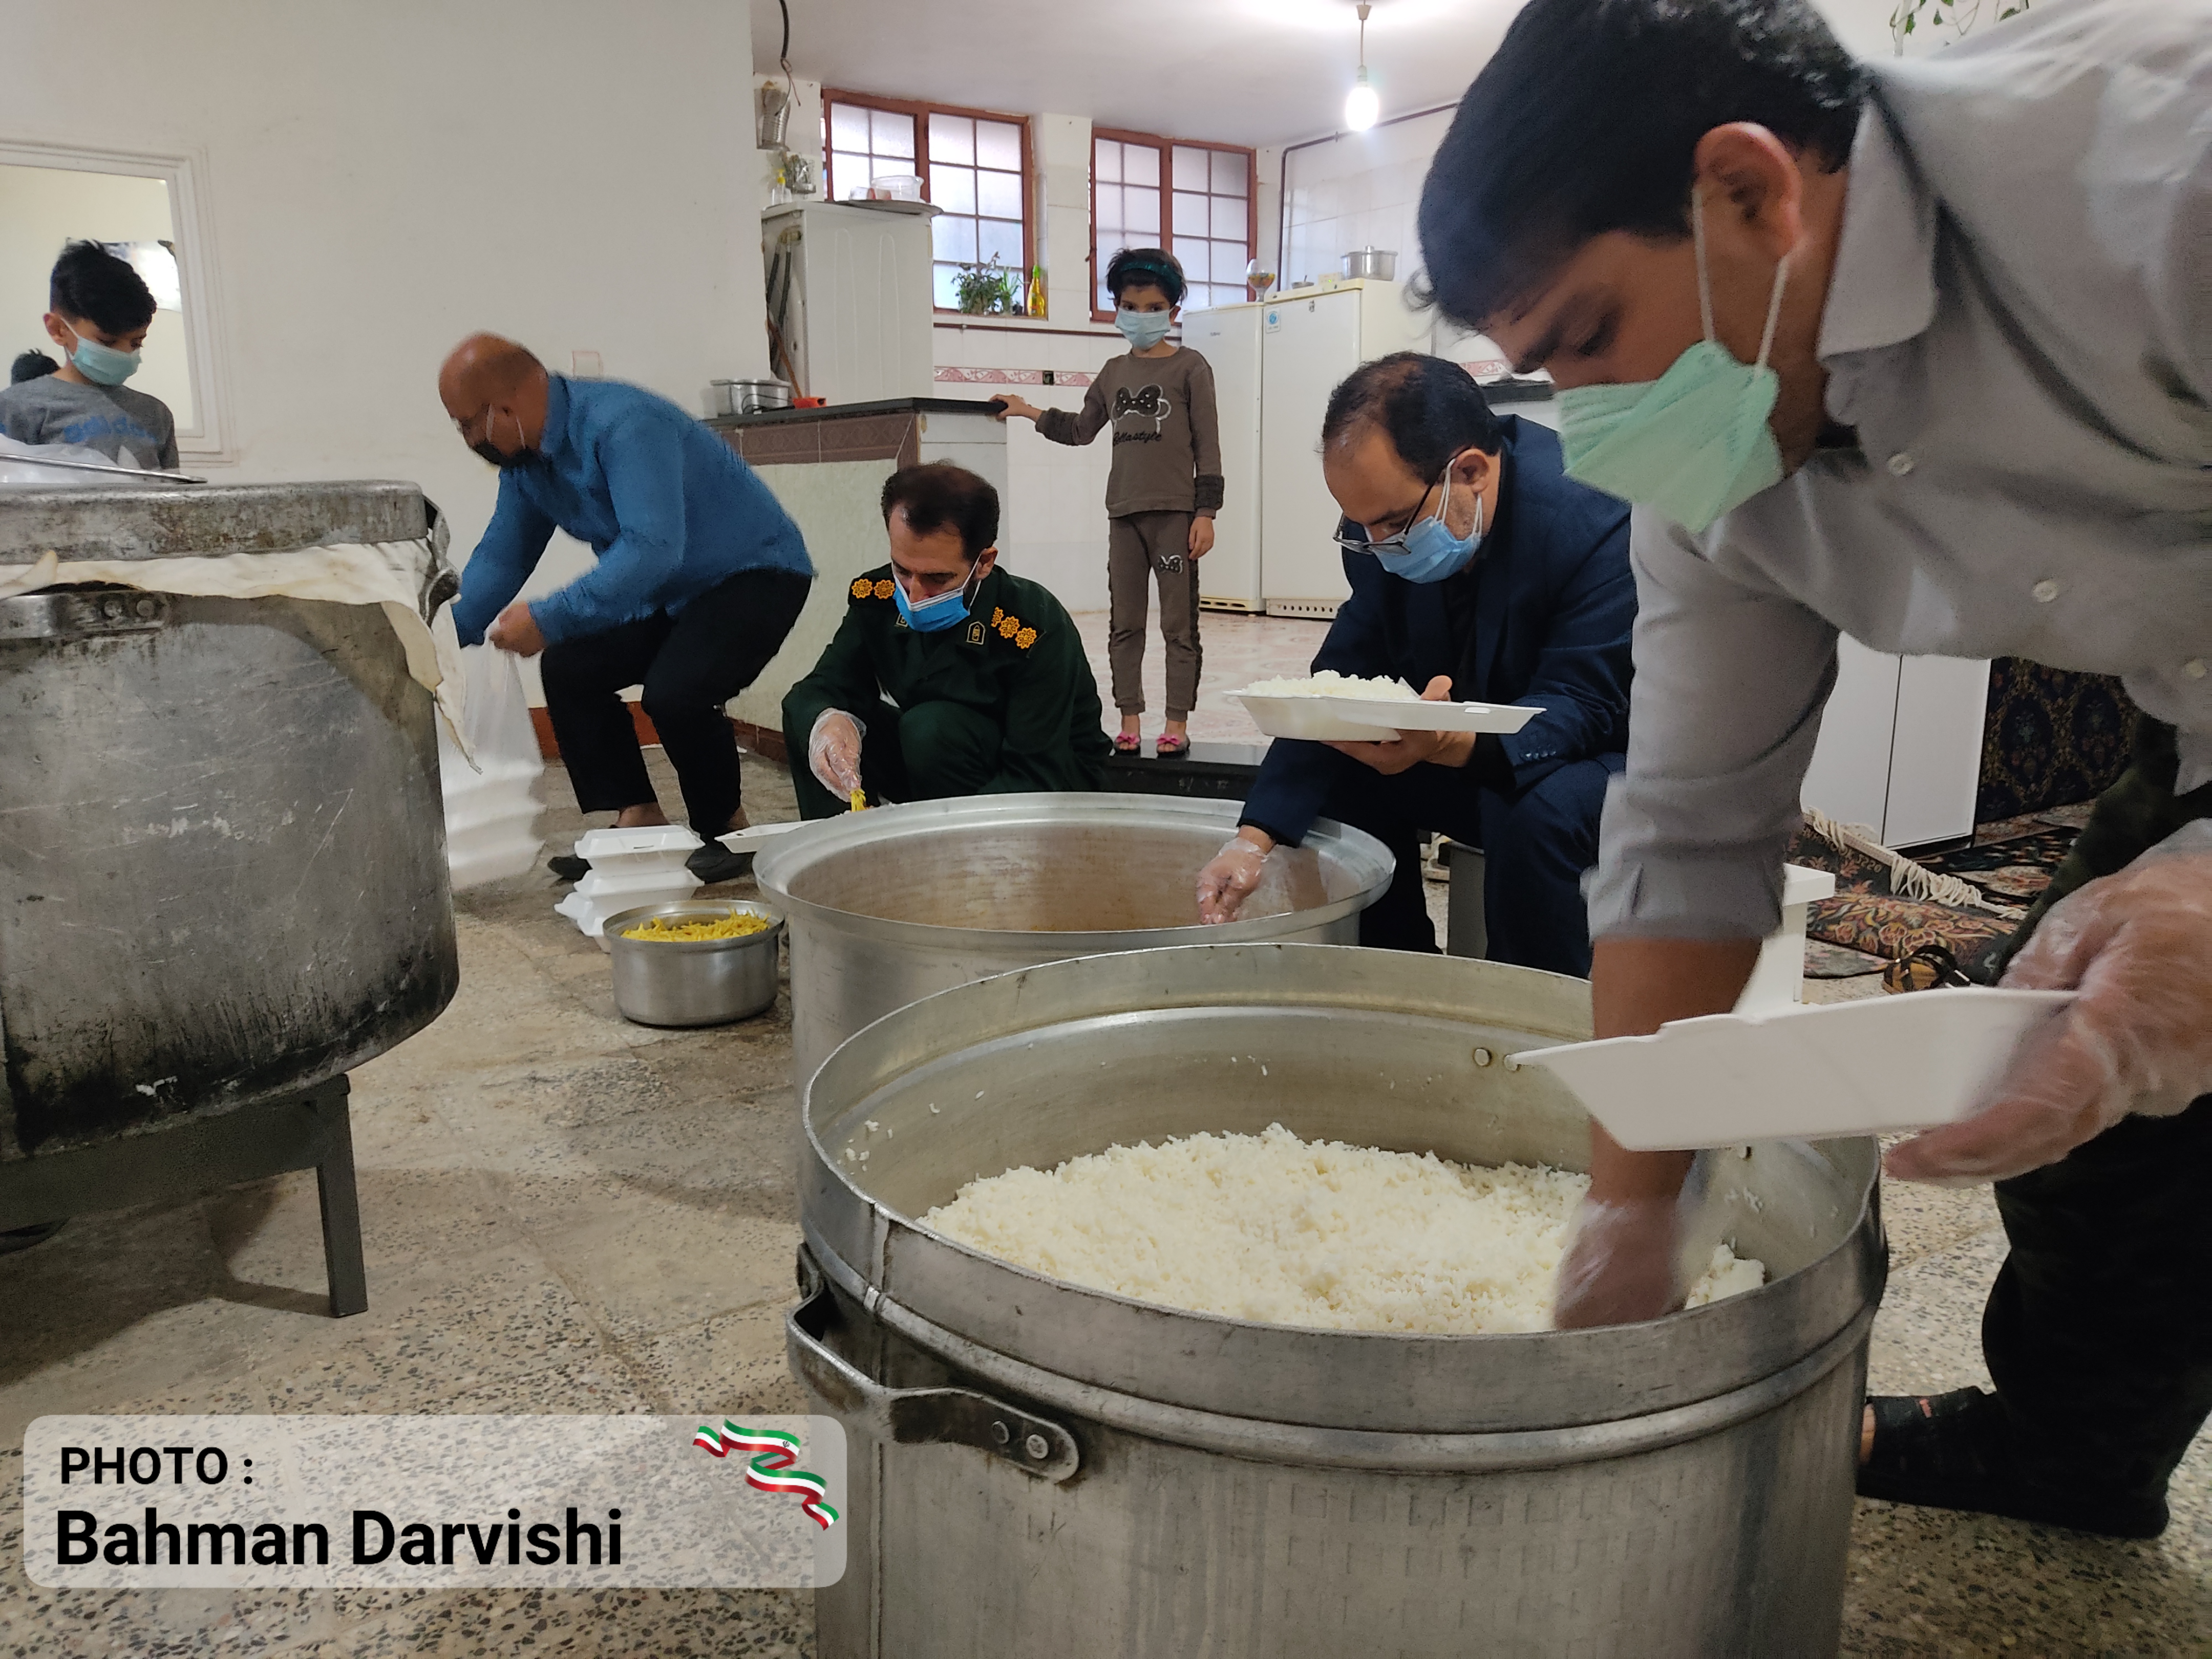 تهیه و توزیع ۷۰۰ بسته غذای گرم در بین نیازمندان حاشیه نشین شهرستان کوهدشت، توسط قرارگاه امام حسن مجتبی (ع) بسیج دانشجویی این شهرستان: